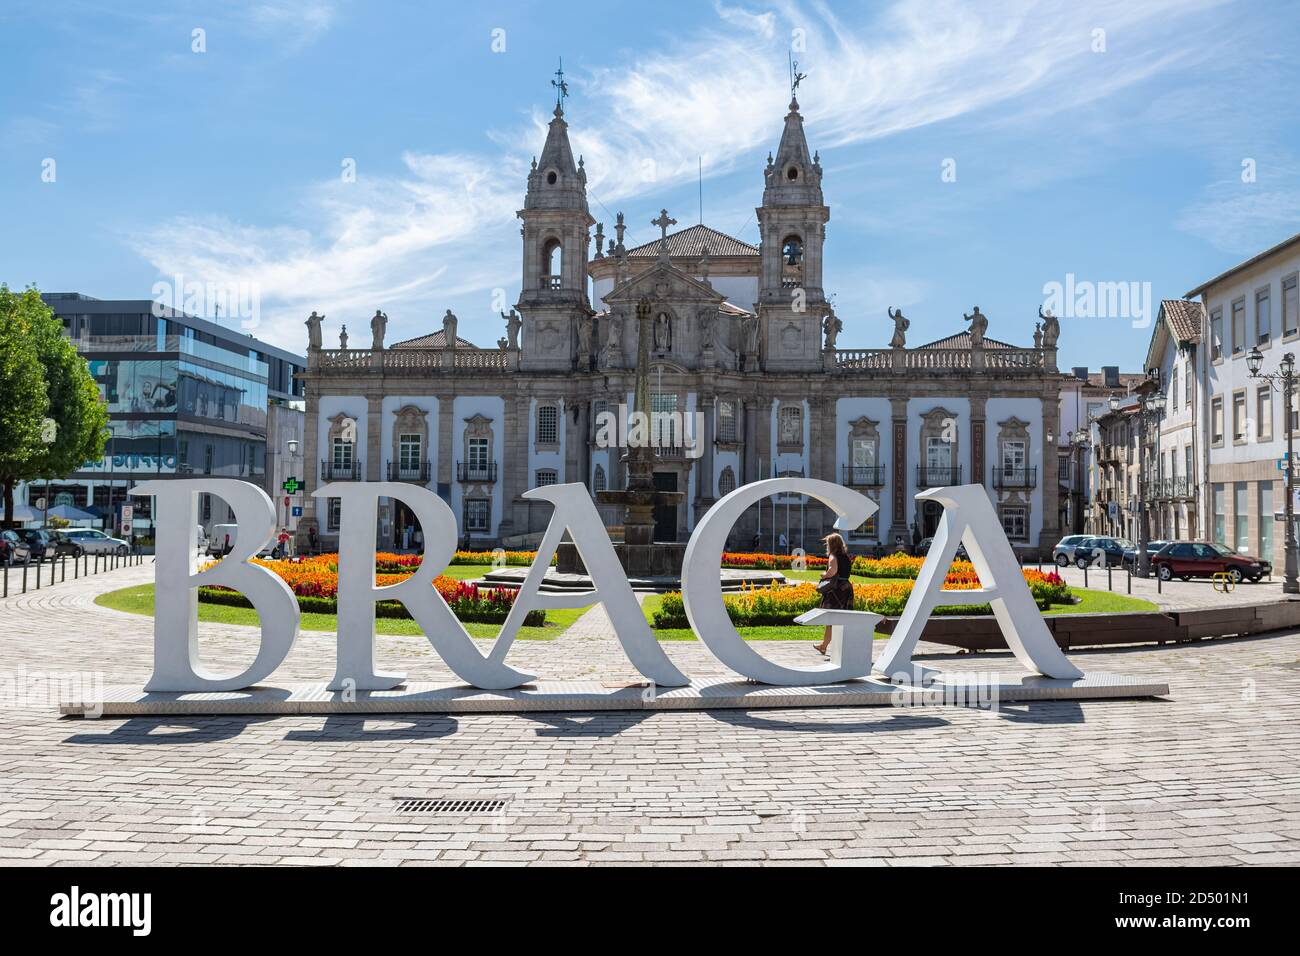 Braga / Portugal 09 12 2020: Ver las grandes letras icónicas con el nombre  en EL BRAGA,